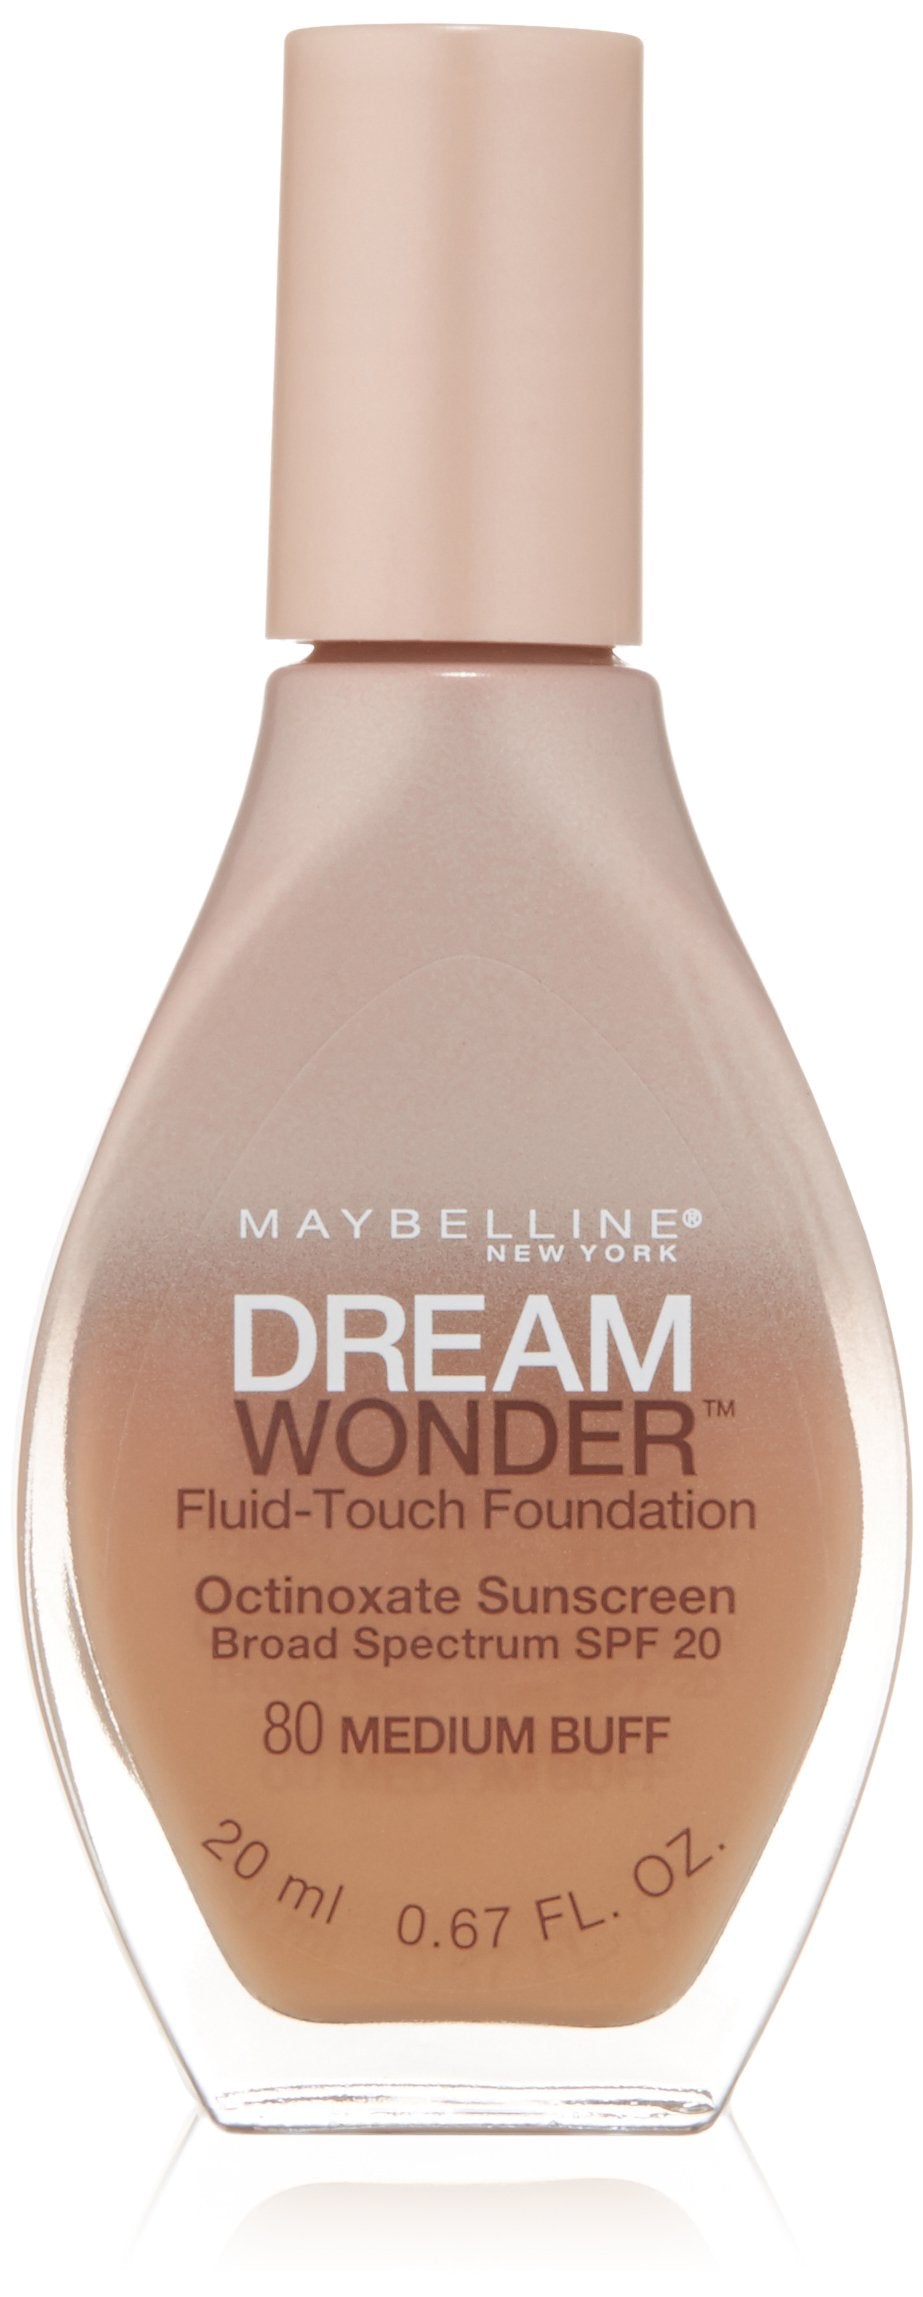 Maybelline New York Dream Wonder Fluid-Touch Foundation, Medium Buff, 0.67 Fl...